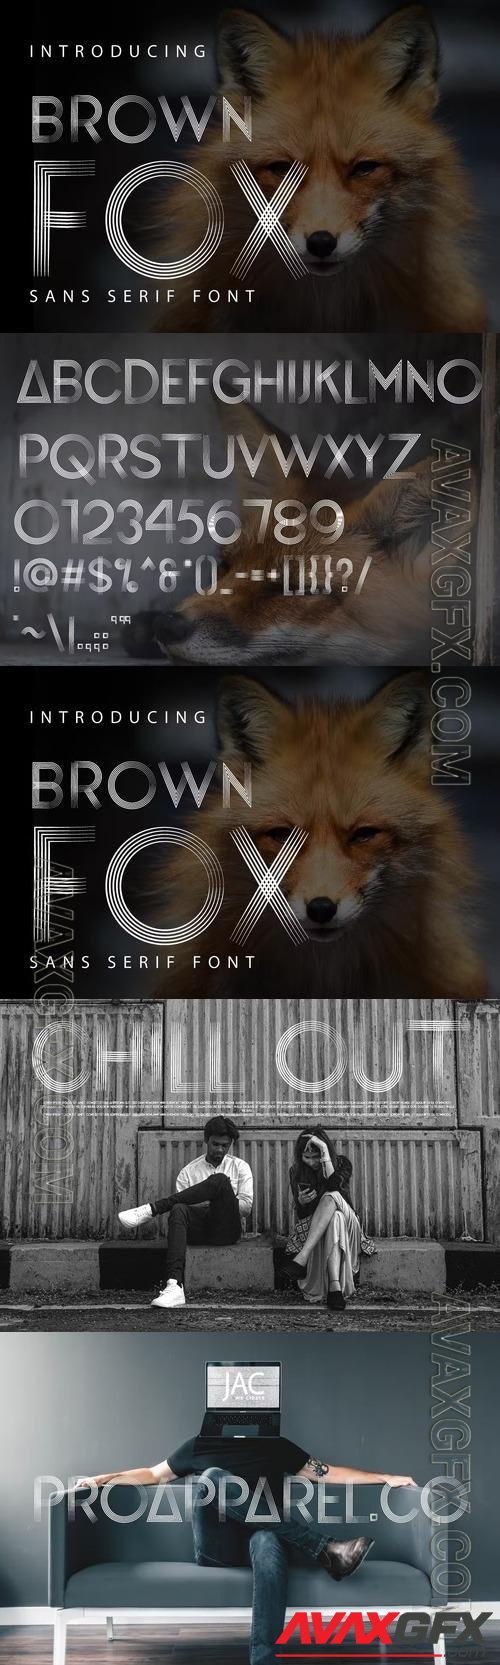 Brownfox - Sans Serif Fonts